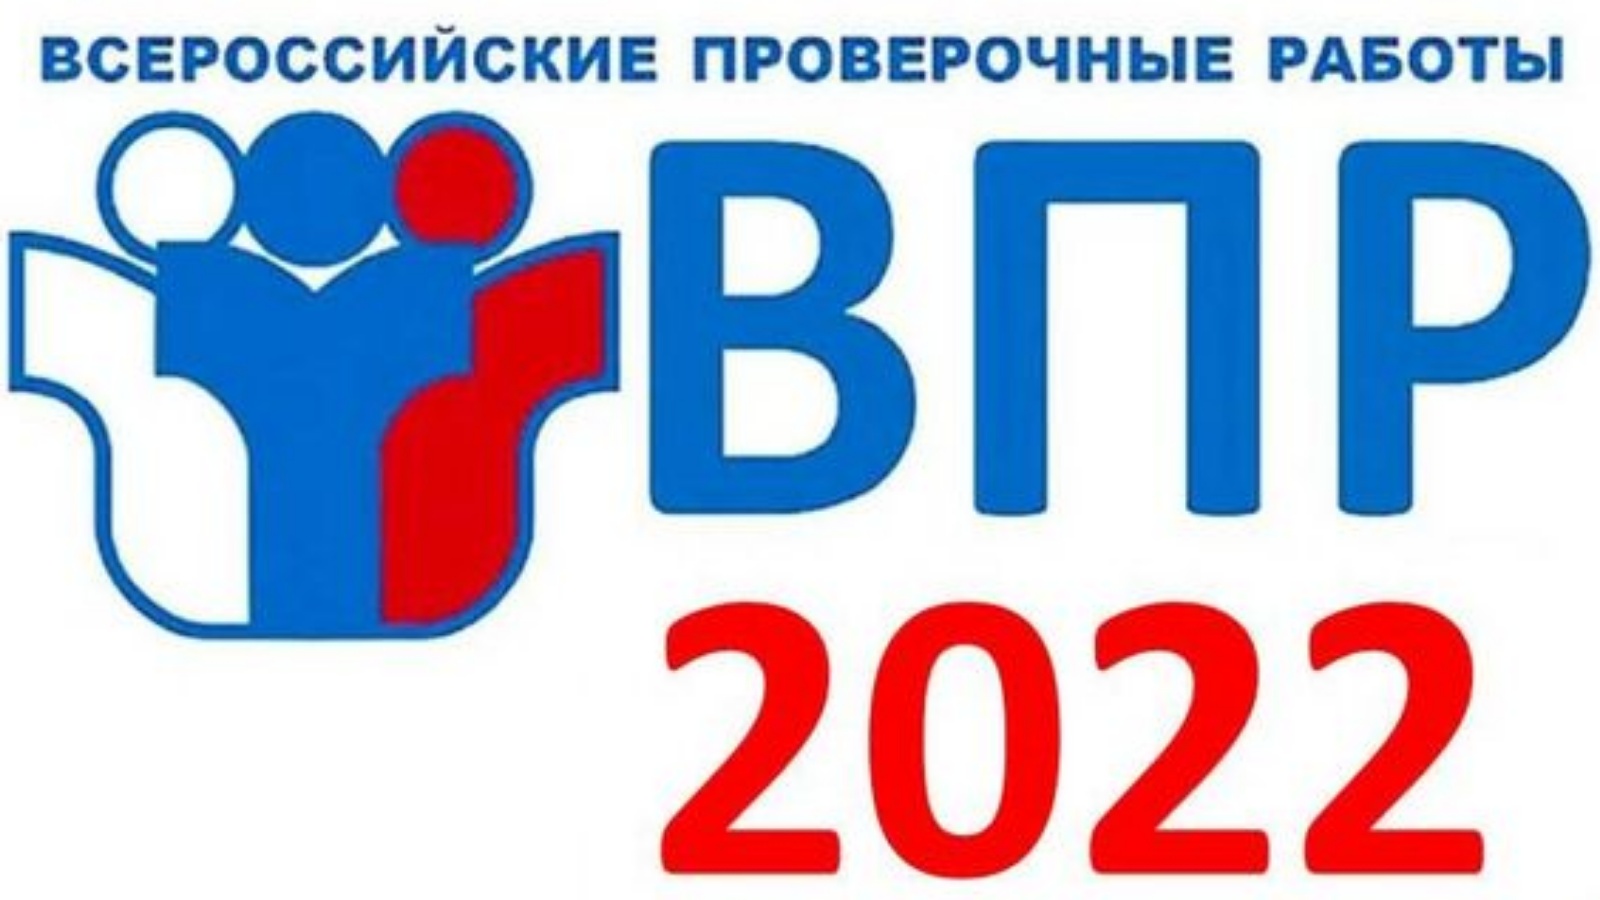 11 8 15 16 25 28 впр. ВПР 2022. ВПР 2022 осень. Логотип ВПР 2022. ВПР 2022 год.